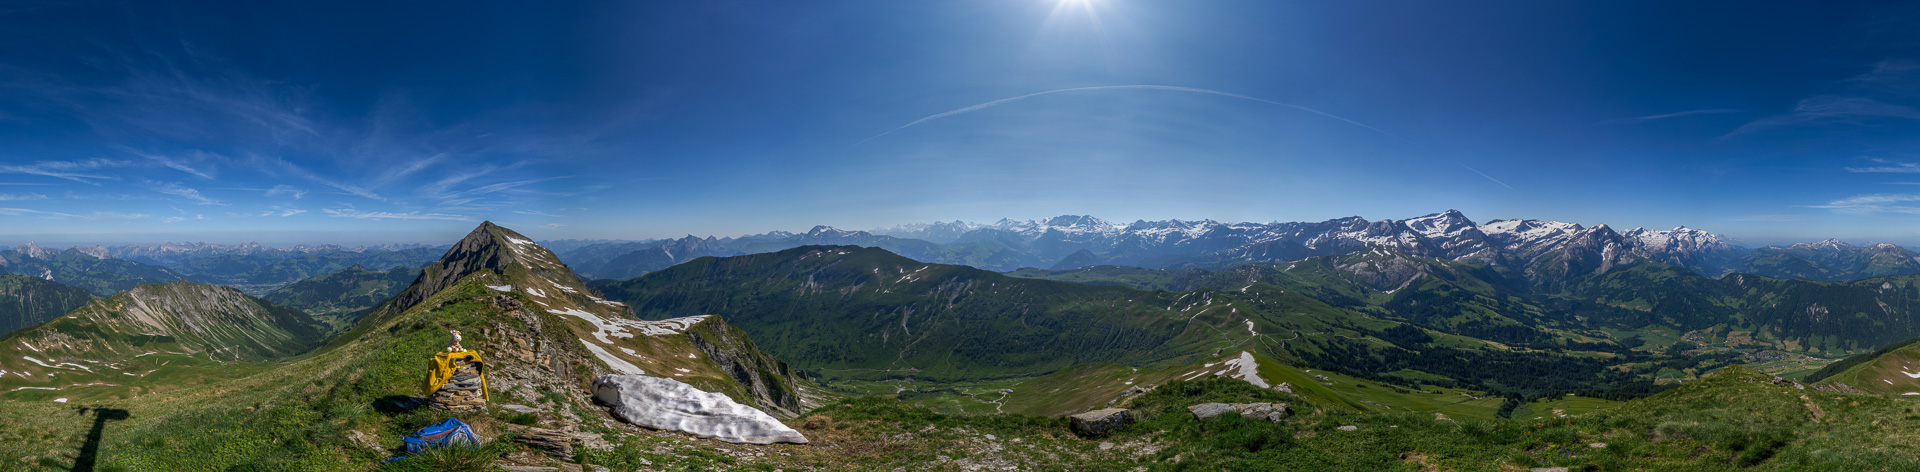 Ungewöhnlicher Panorama-Blick in die Berner Alpen